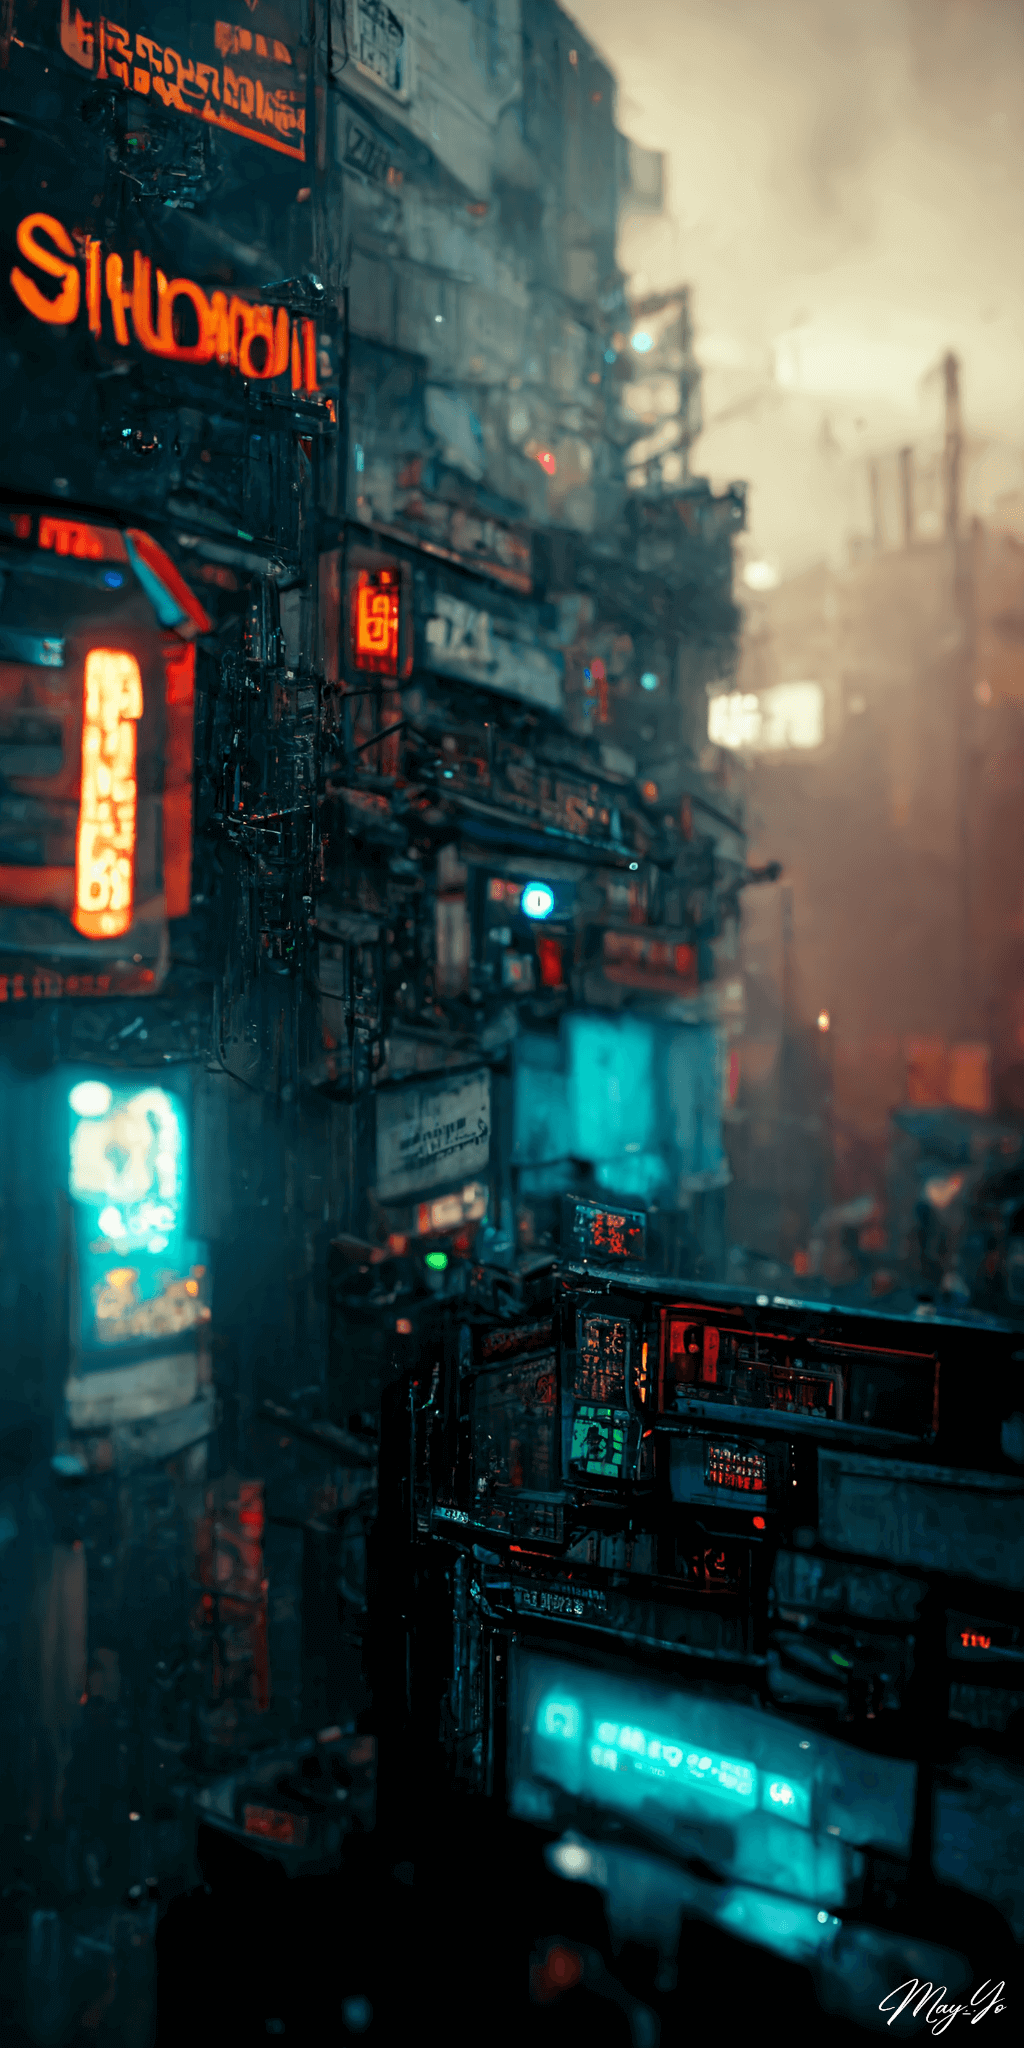 サイバーパンクなネオンが光る夜の街並みのイラスト サイバーパンクなアジアの夜景の壁紙 AIイラスト待受 縦長画像 cyberpunk town illustration bright neon